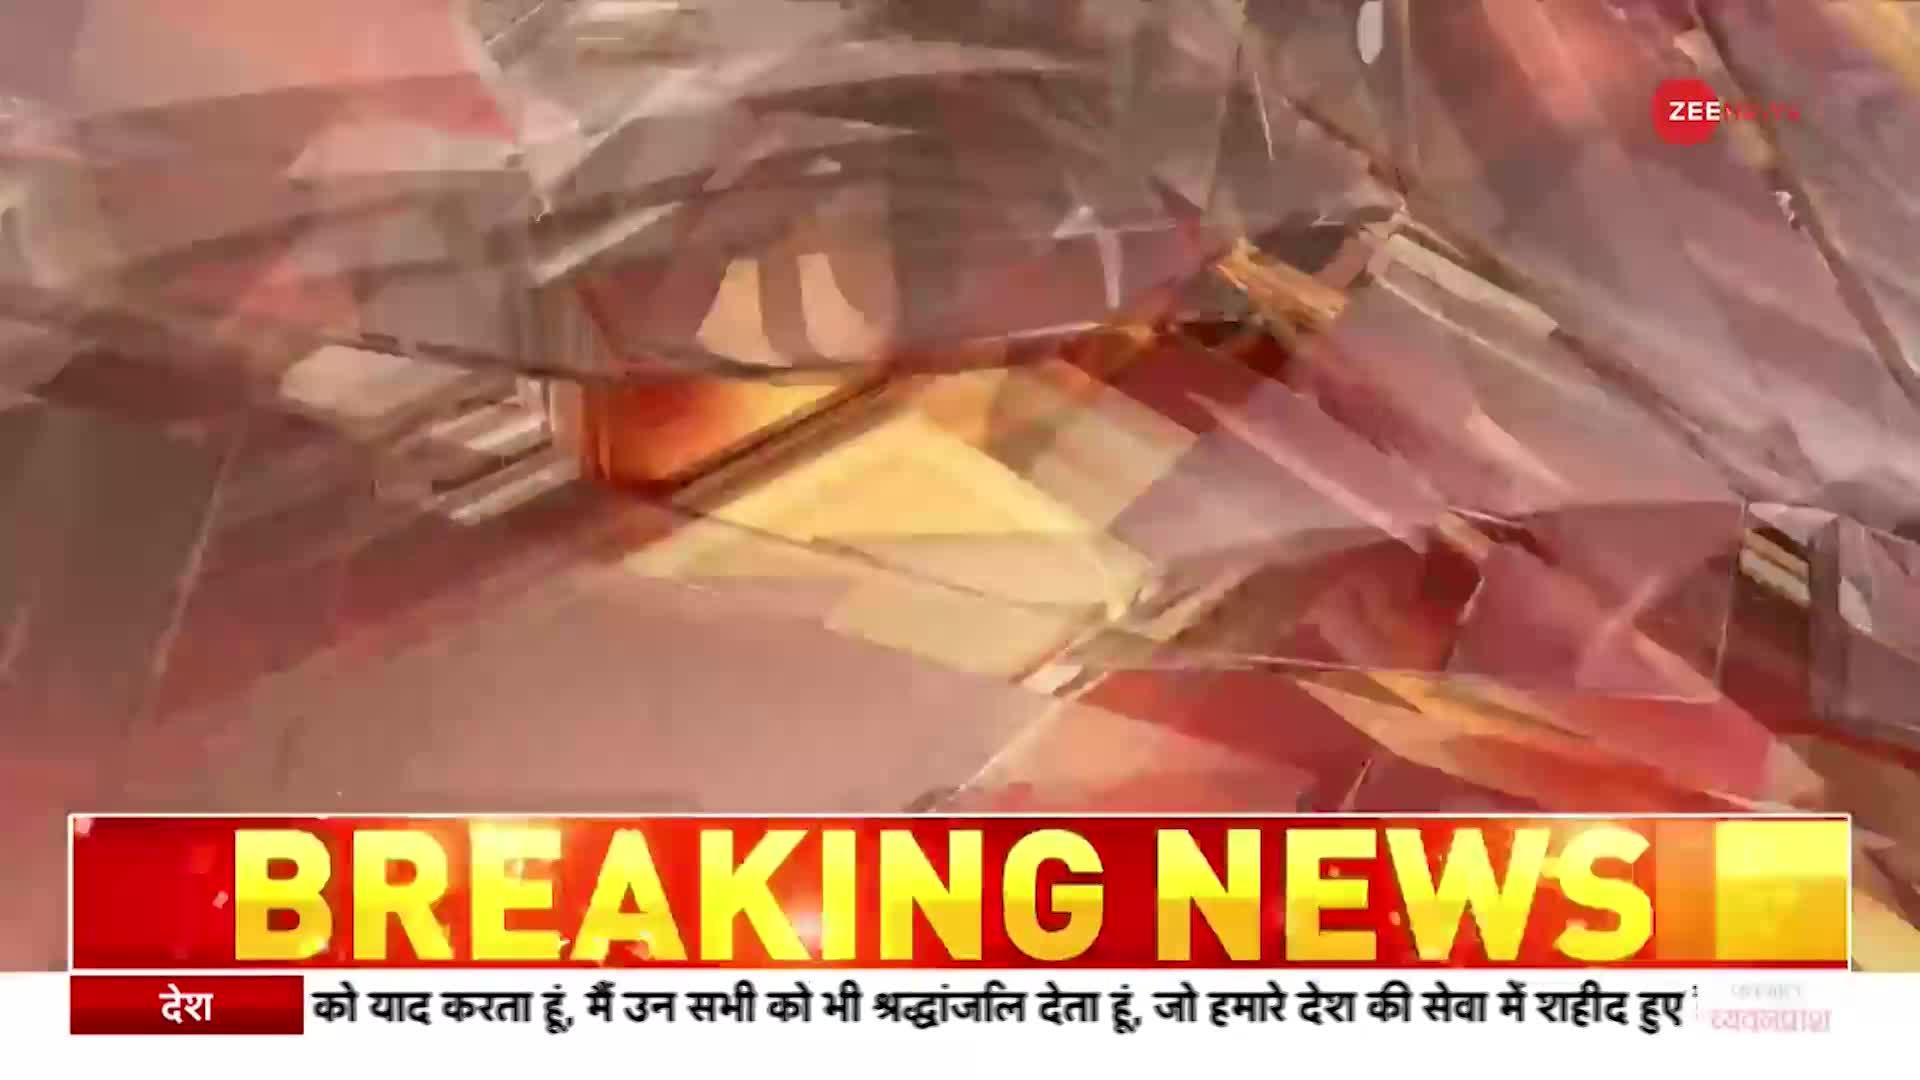 Breaking News: कर्नाटक में कैलाश खेर पर हमला, हंपी उत्सव में नहीं गाया फरमाइशी गाना तो मारी बोतल